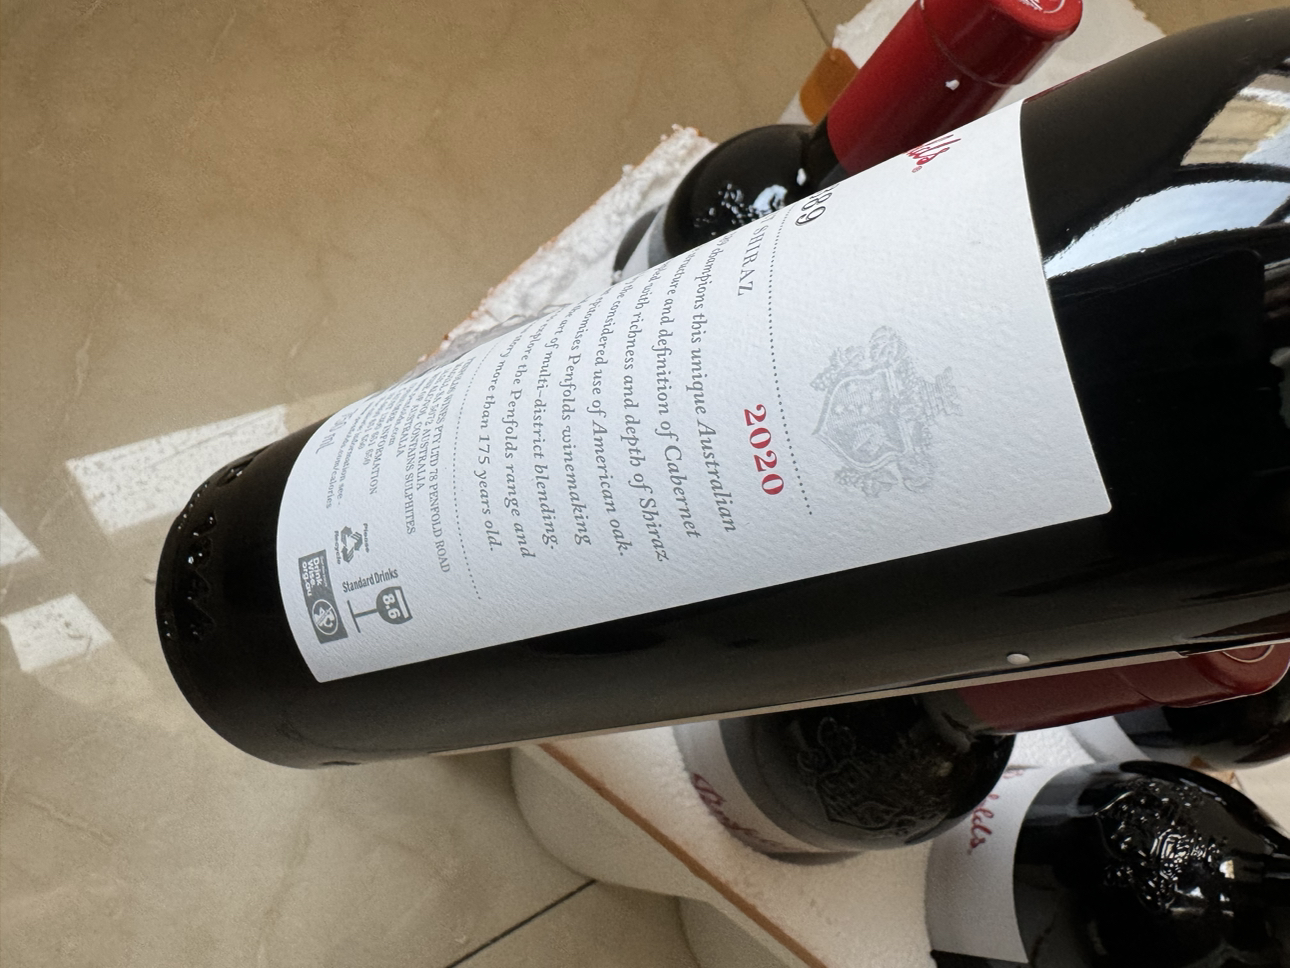 [6瓶]penfolds奔富BIN389赤霞珠干红葡萄酒750ml(年份随机)晒单图